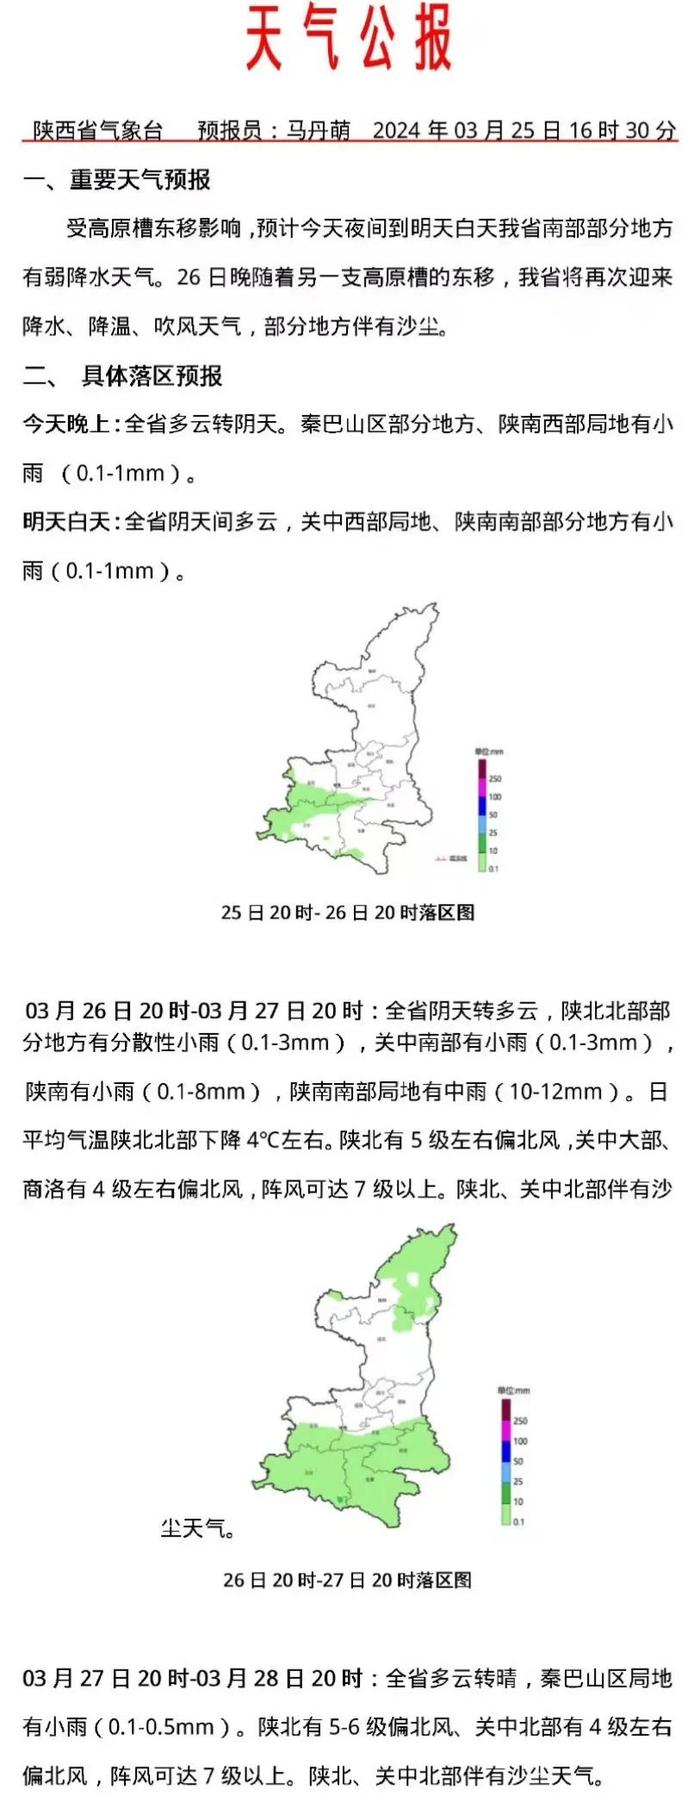 预计今天夜间到明天白天陕西省南部部分地方有弱降水天气